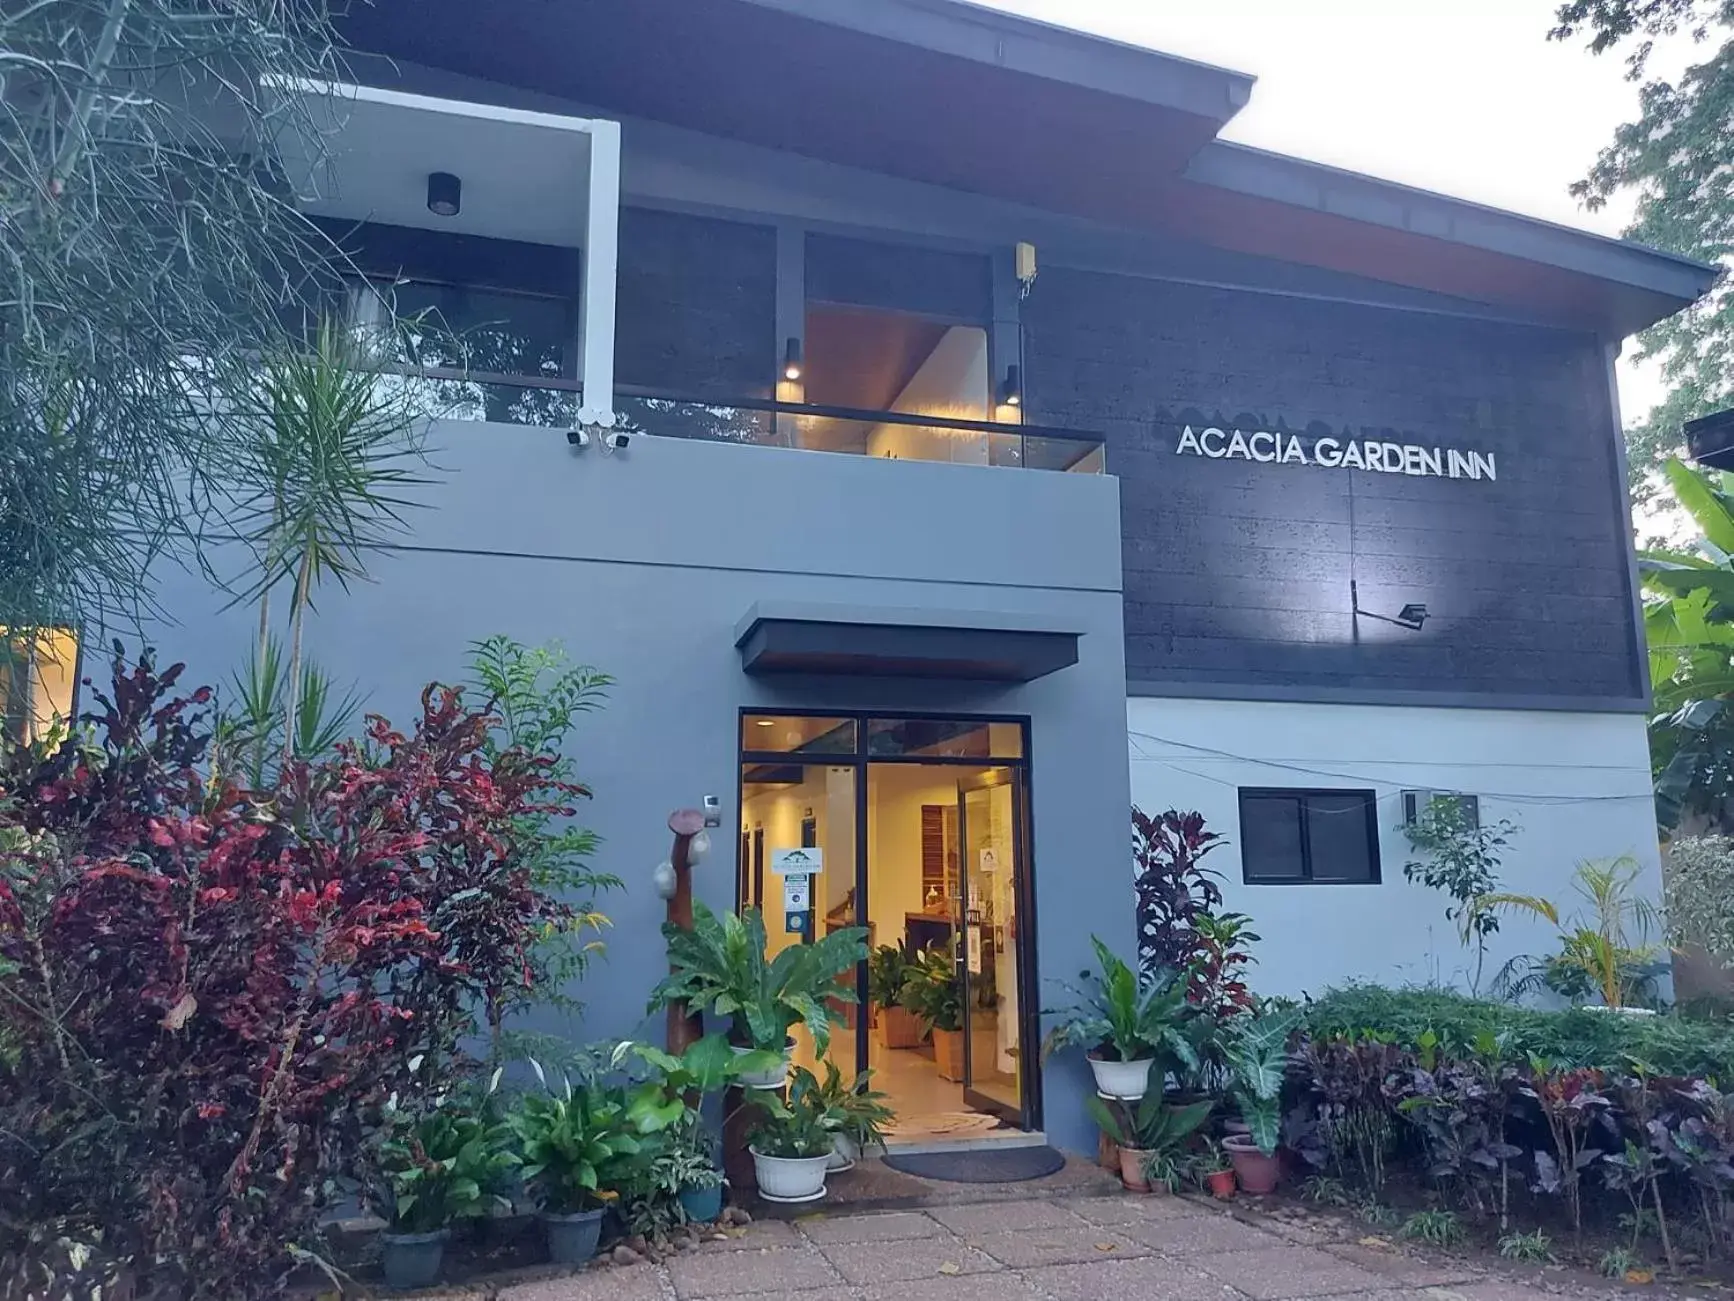 Property Building in Acacia Garden Inn